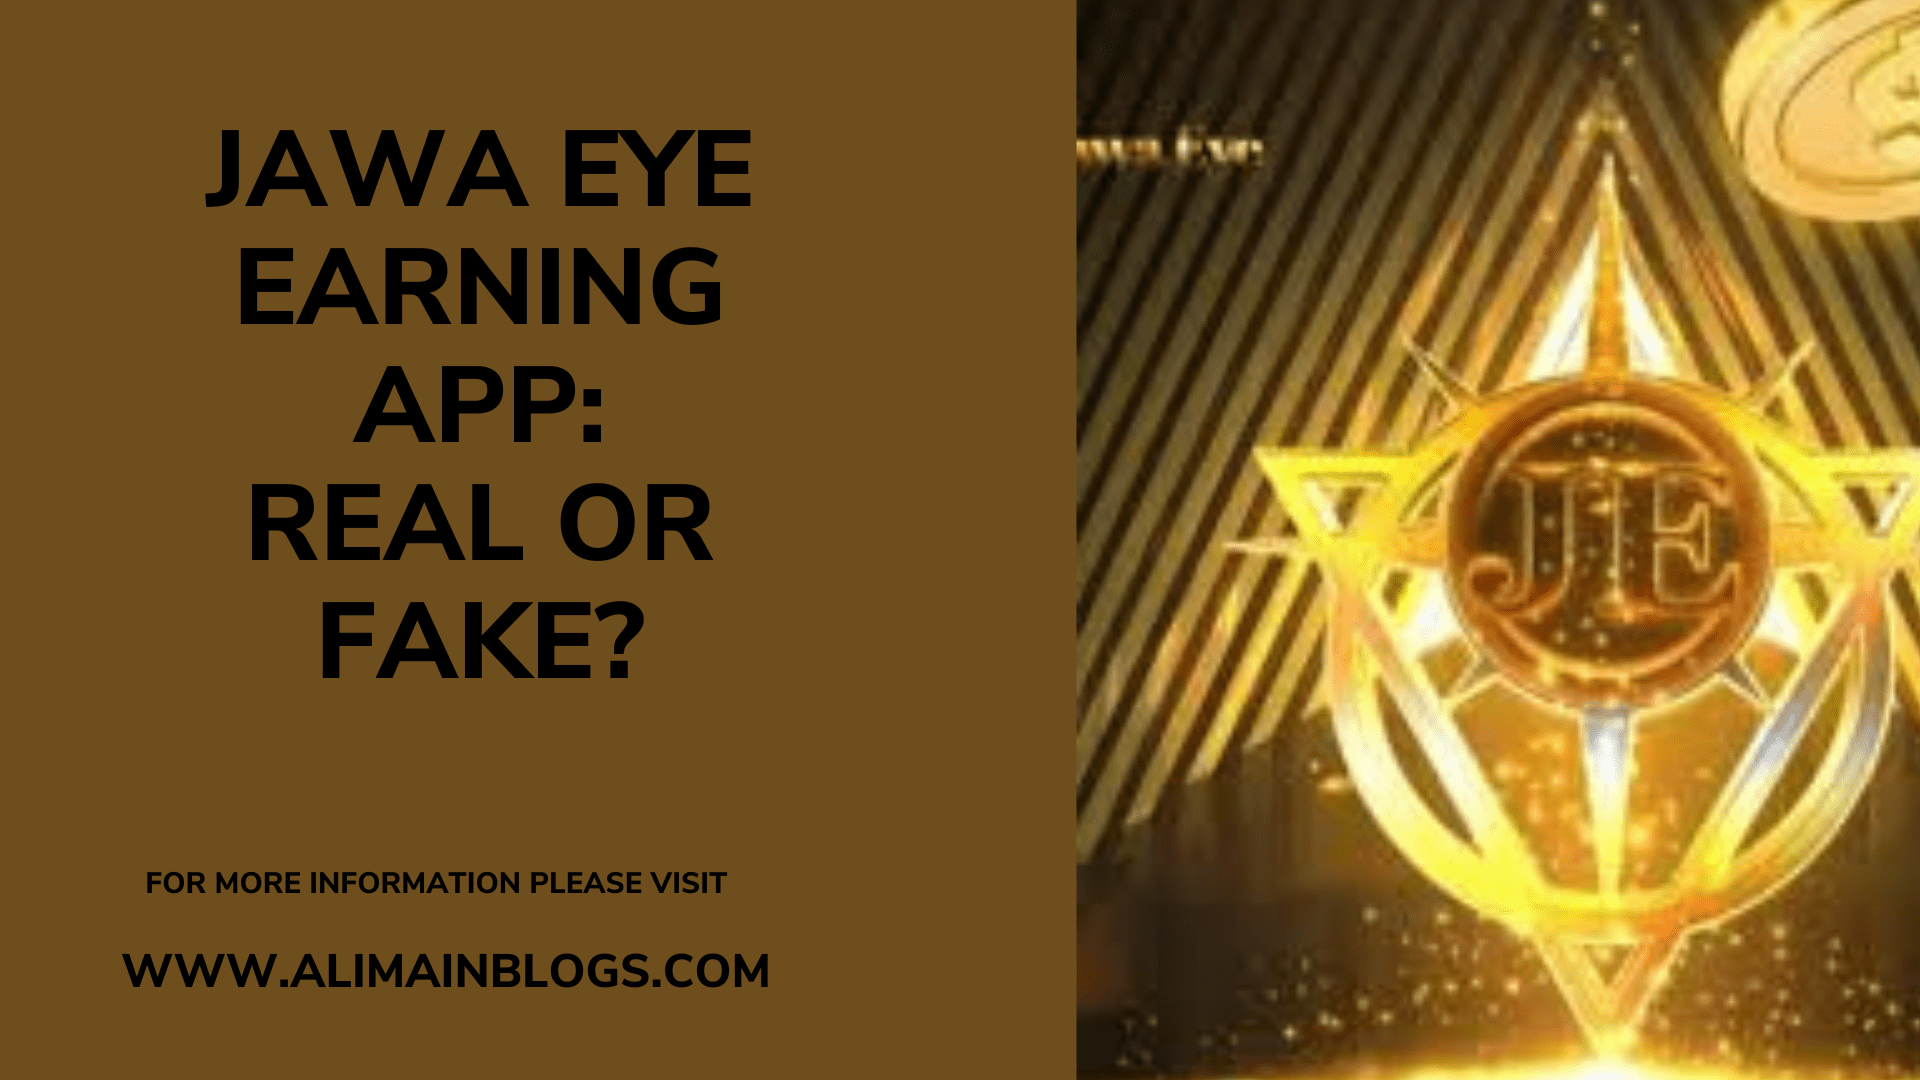 Jawa eye earning app: Real or Fake?